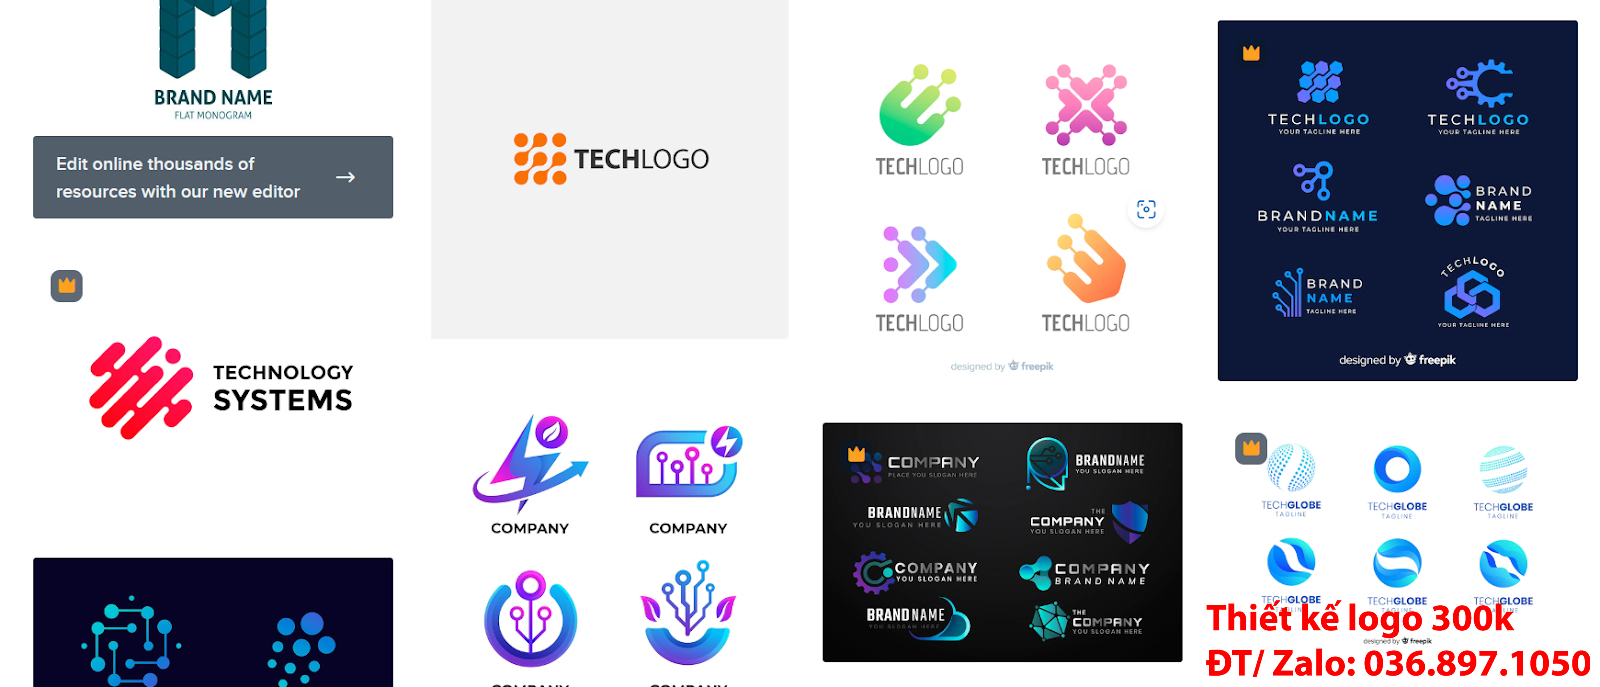 Thiết kế logo công ty công nghệ online chuyên nghiệp chất lượng 500k